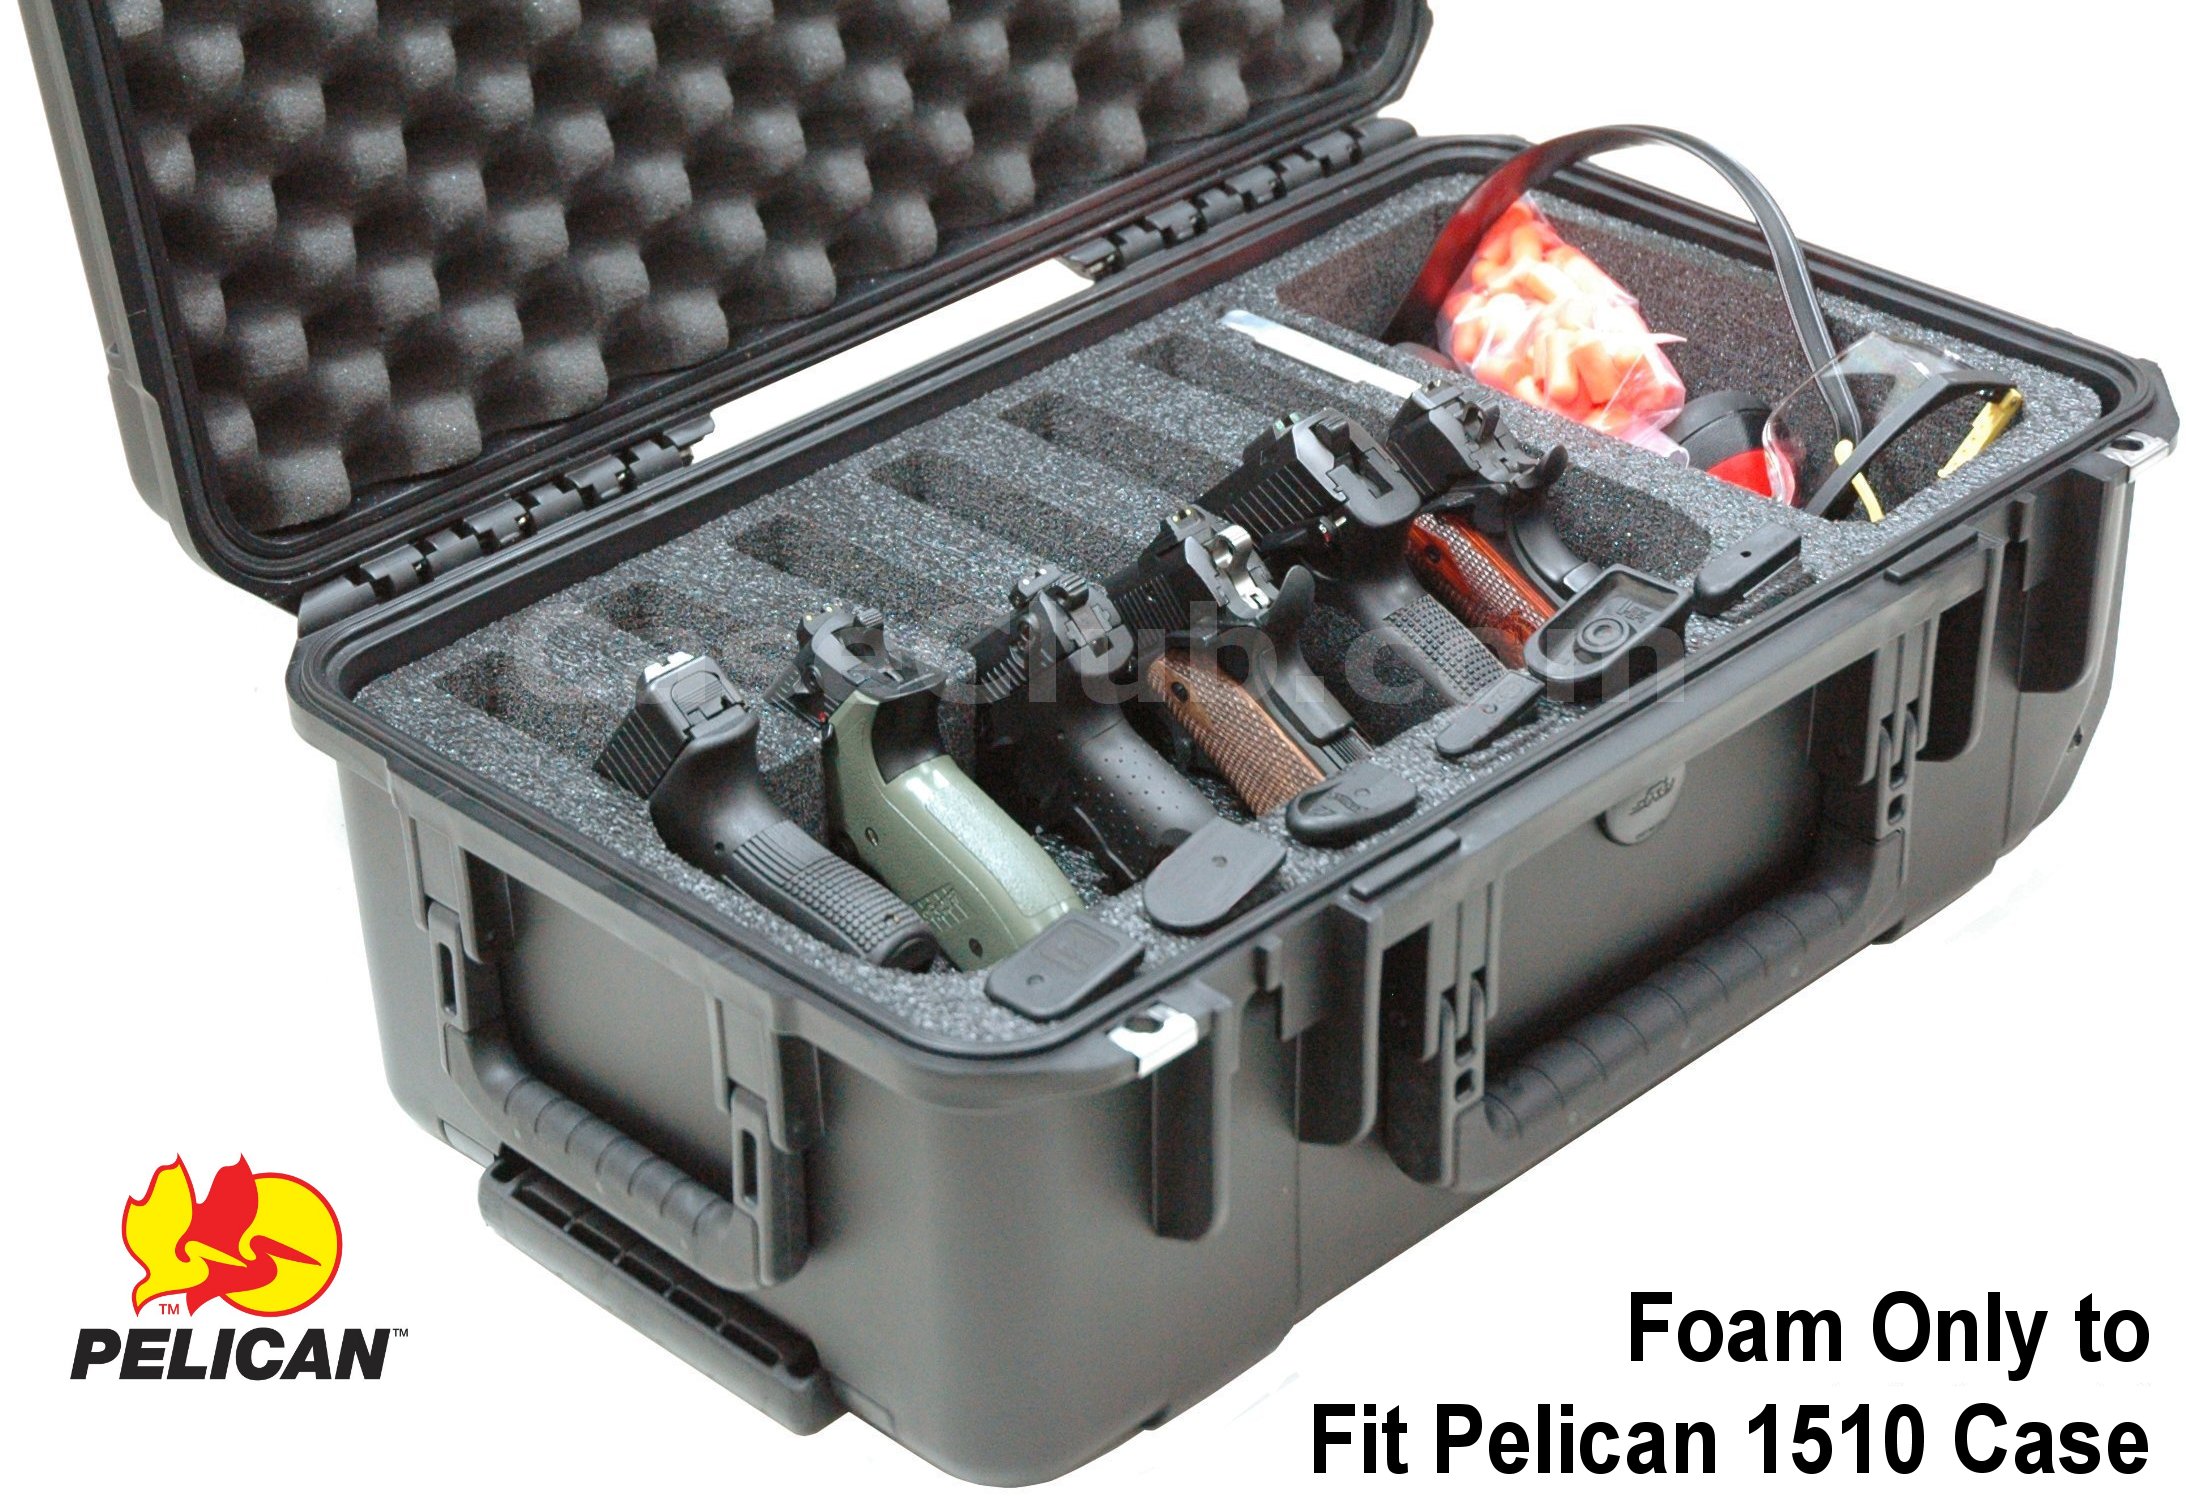 5-Pistol Foam Insert for Pelican 1510 Case [Foam Only]